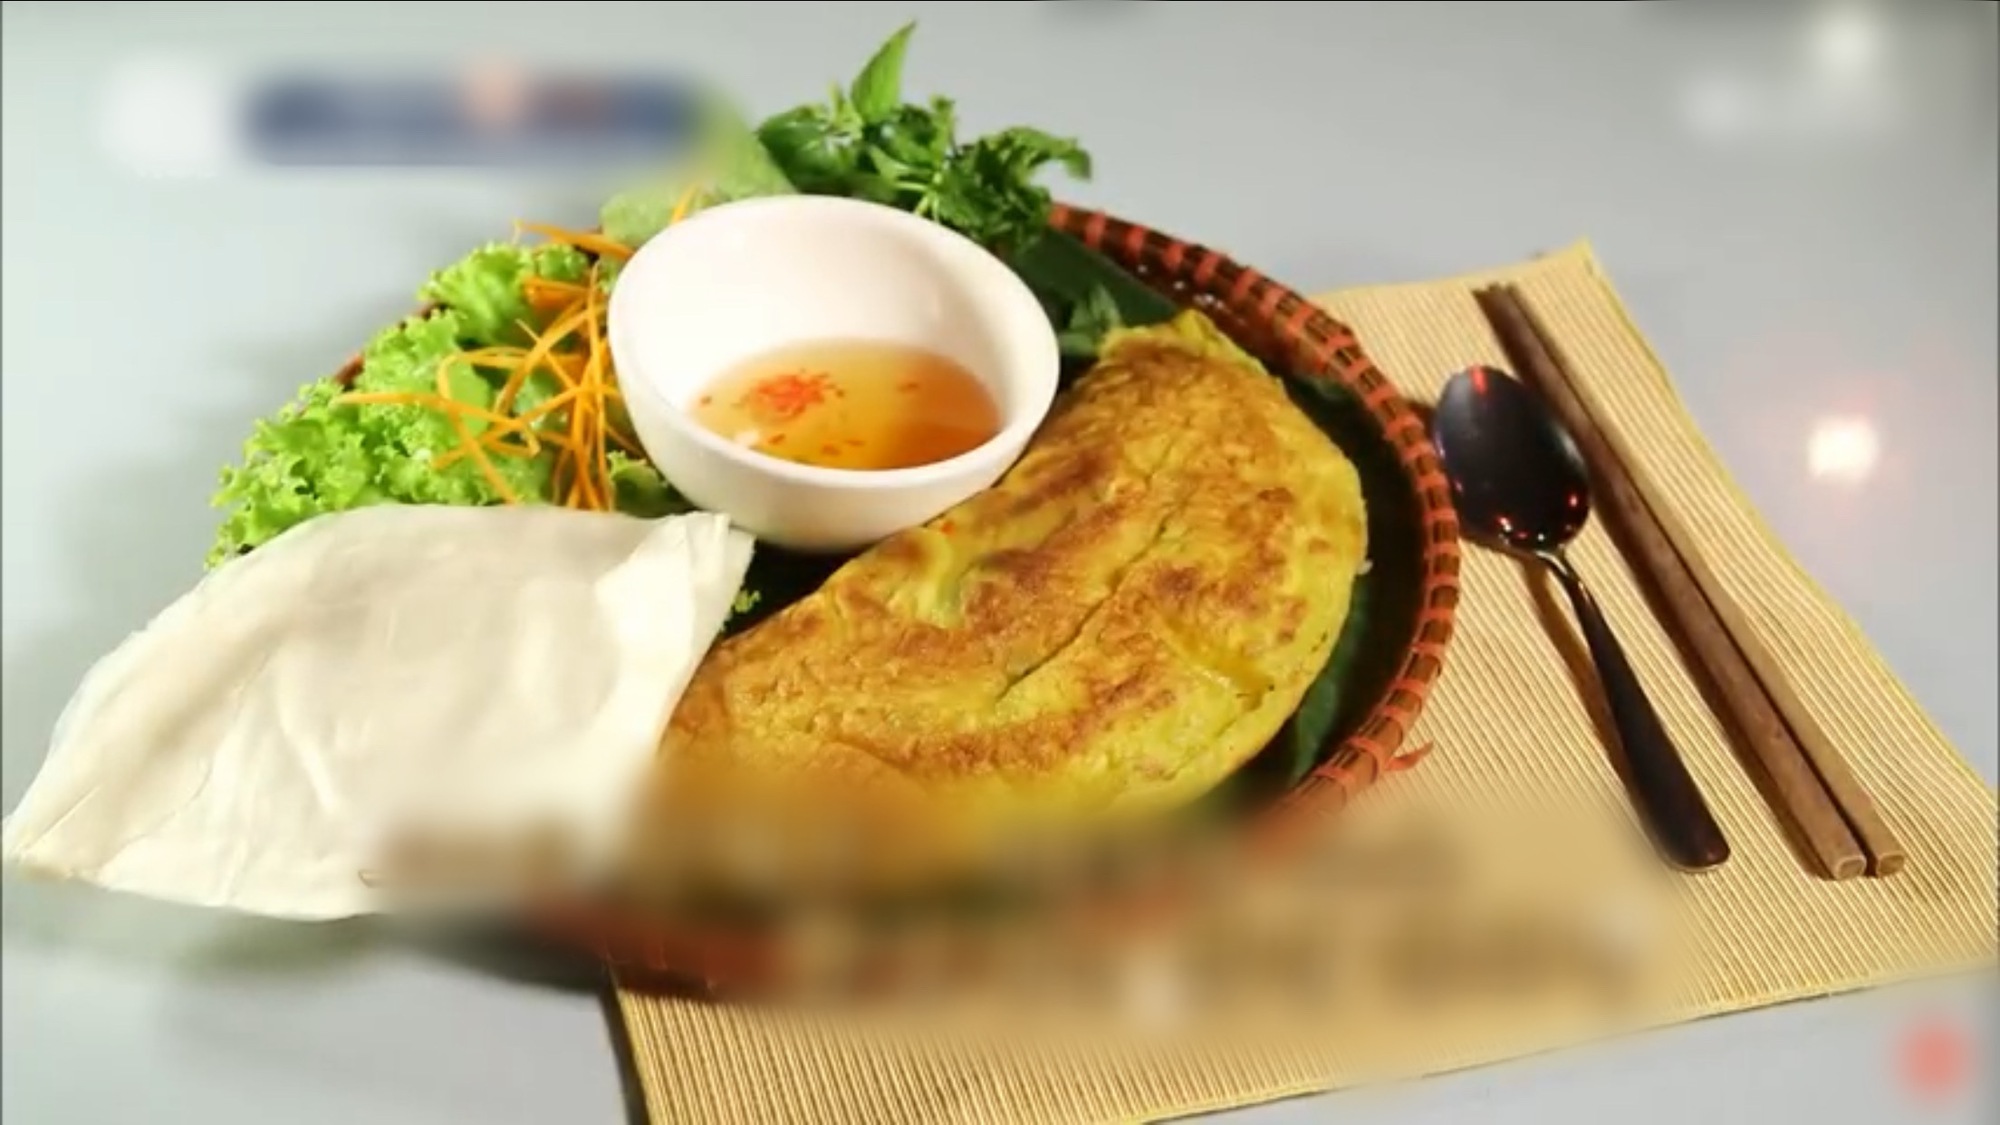 Bánh xèo Việt Nam khiến dàn sao Hàn thích mê vì quá ngon - Ảnh 4.